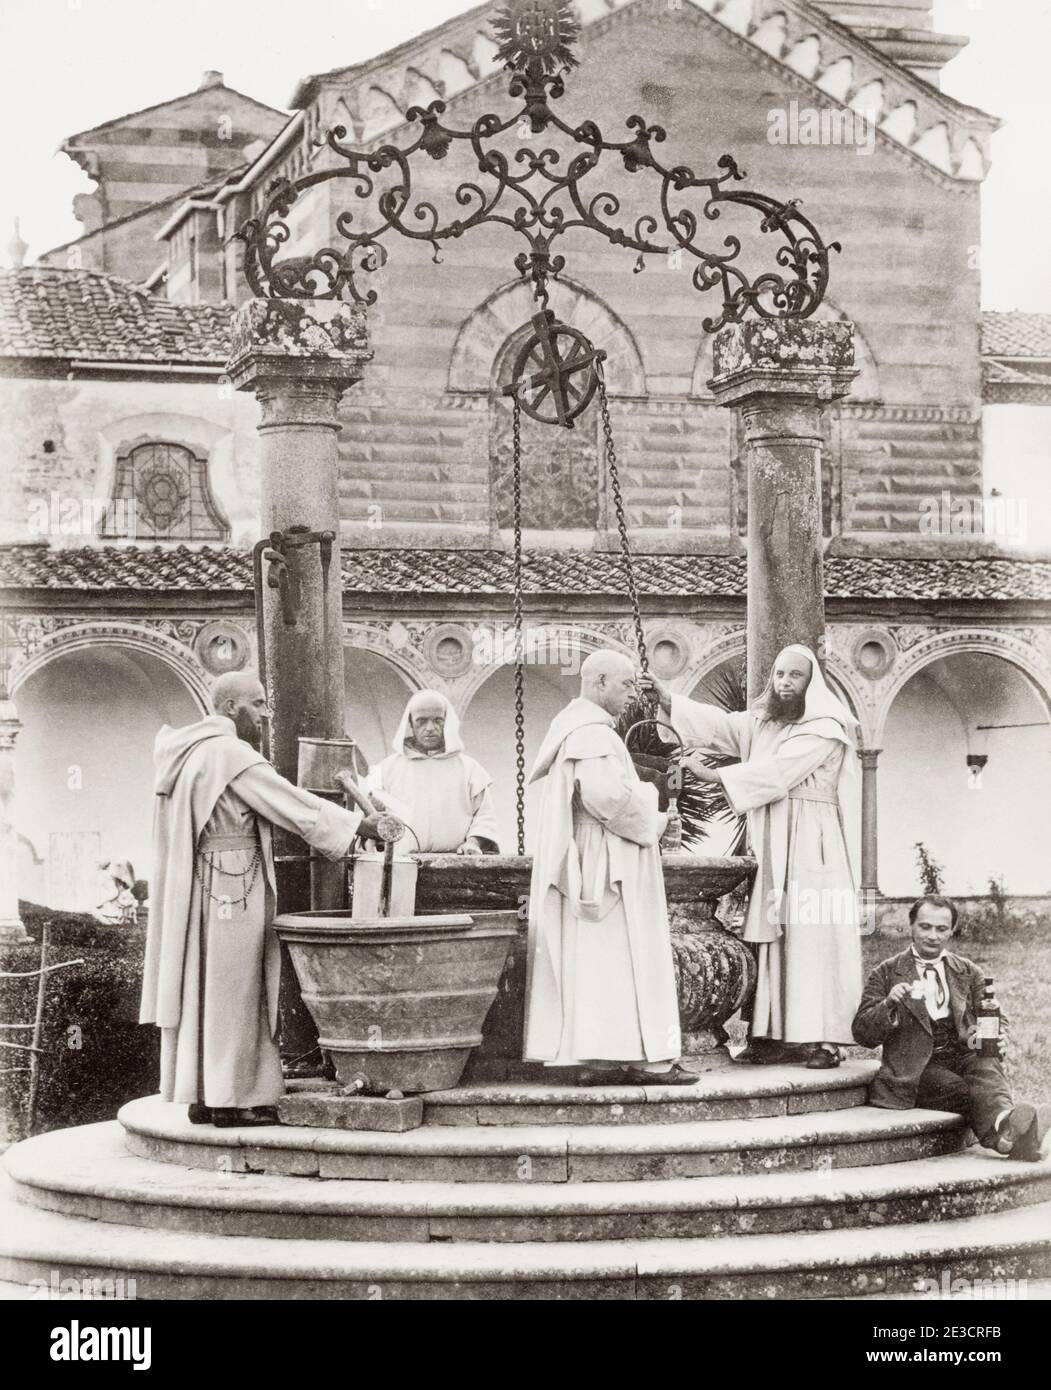 Fotografía del siglo XIX: Monasterio Certosa, Florencia, monjes cartujos sacando agua del pozo. Foto de stock